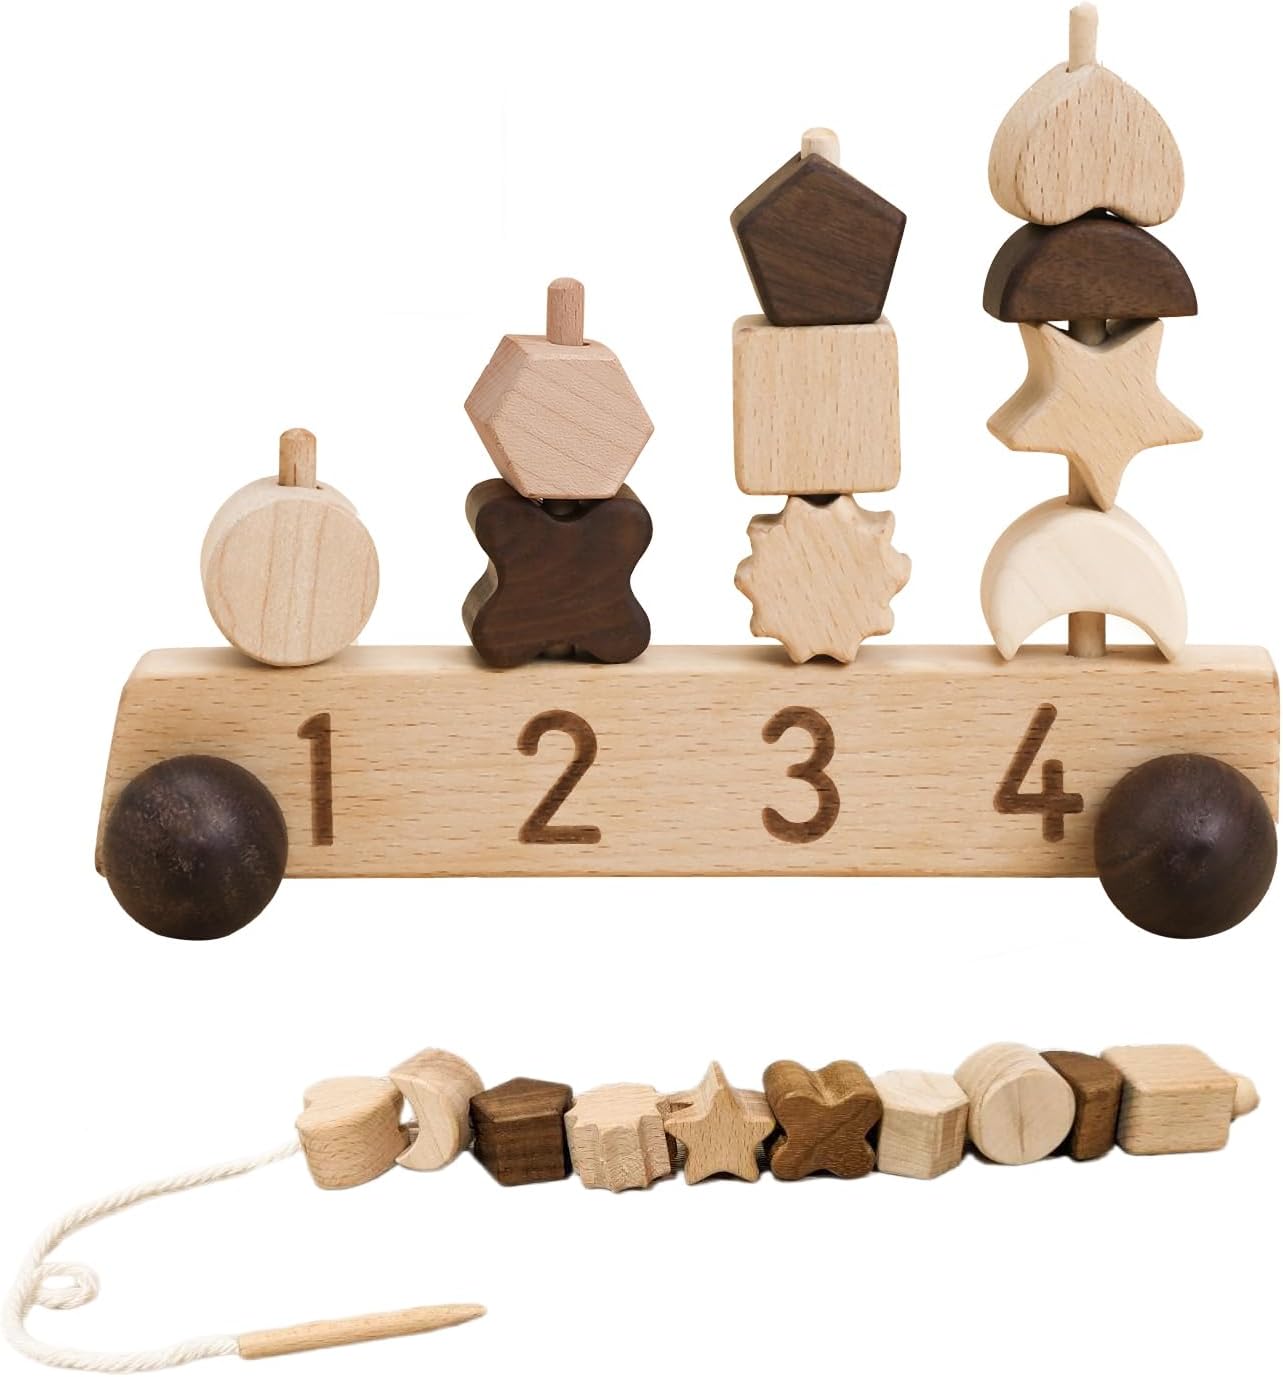 商品情報 【指先の発達にシリーズおもちゃ】指の器用さと計算能力を啓発するためのゲームセットです。子供たちは、木製カートに付属の棒にさまざまな形のブロックを挿してみることができます。木の棒の位置を目で確認しながら、指を正確に異なるブロックに置く。この過程は子供の目と手の間の協調性を鍛えるだけでなく、創造性を深めるのに役立ちます！ 【多様な遊び方の知育玩具】「ひも通し」：スタッキングゲームとしてだけでなく、ひも通しおもちゃとしても遊ぶことができます。ブロックにひもを通してつなげてみて、すぐに夢中でブロックを通すスピードが早くなり、たのしく集中力もつきそうだ！「数字認知」：木製のトロリーに印刷されている番号は、上記の同じブロック数に対応しています。ブロックの個数、対応する数字をお子さまに語りかけながら遊ぶことで、数字を表す単語を学ぶことができます。 【特別な手押し車デザイン】本体となる木車ベースは、ナチュラルな風合くて独特な形をしており、底には4つの滑らかな車輪があり、手で木車をつかみ、車輪の回転を使って車を前進させます。赤ちゃんの興味を引き、手押し車と一緒にお散歩して色々な発見しちゃおう！遊んだ後、そのままに部屋に置いていても可愛い。 【赤ちゃん向けの安心な素材】天然木製のおもちゃとして、環境に優しい塗料を採用して、ブロックはすべて角を取って面取りされているのでお子さんにも安心です。全て木製なので使いやすいですし、車輪は床面を保護する天然木で縁取られていて、畳でも絨毯でもしっかり動きます。 【プレゼントにピッタリ】豊富なセットの内容：車輪付きの木製ベース*1、さまざまな形のブロック*10、ひも*1。ご年配の方は、お孫さんとのひとときに、親双方が子供と一緒に参加するのに適したゲームセット。女の子や男の子への知育玩具として誕生日プレゼントランキング1位です！贈り物、出産祝い、入園のお祝い、子どもの日、クリスマス、または特別なイベントにおすすめです。